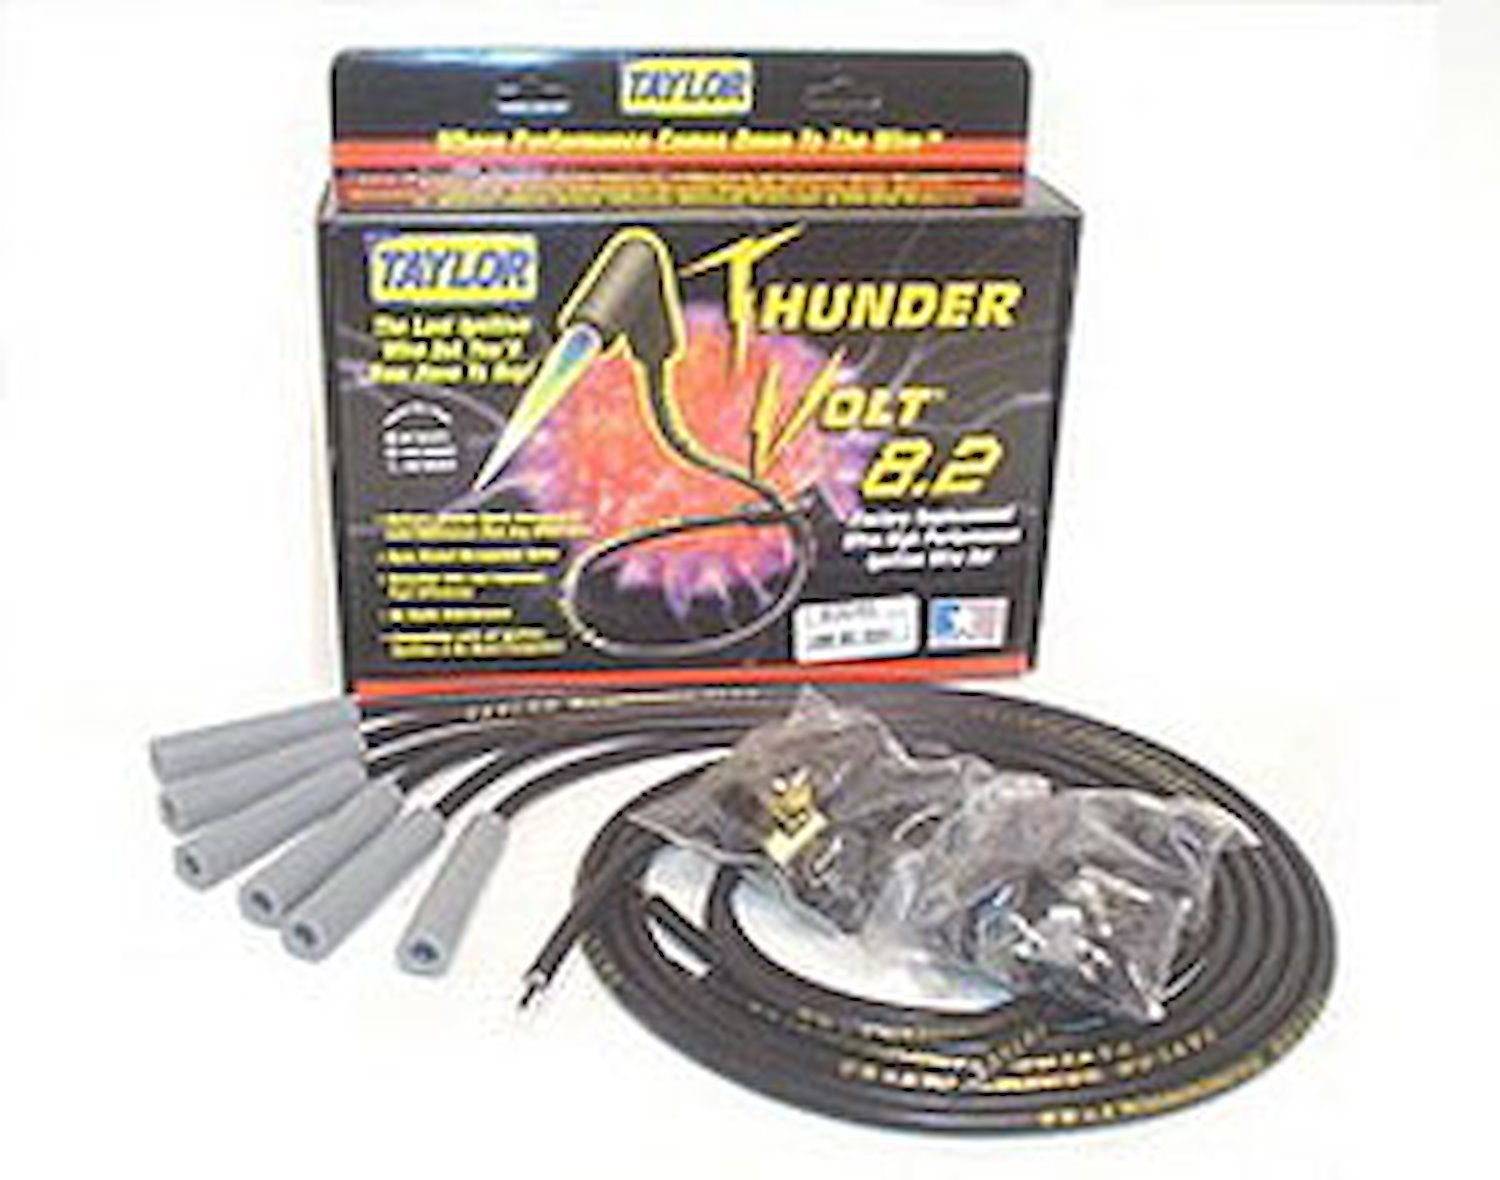 ThunderVolt 8.2mm Spark Plug Wires Universal Fit, 6-Cylinder